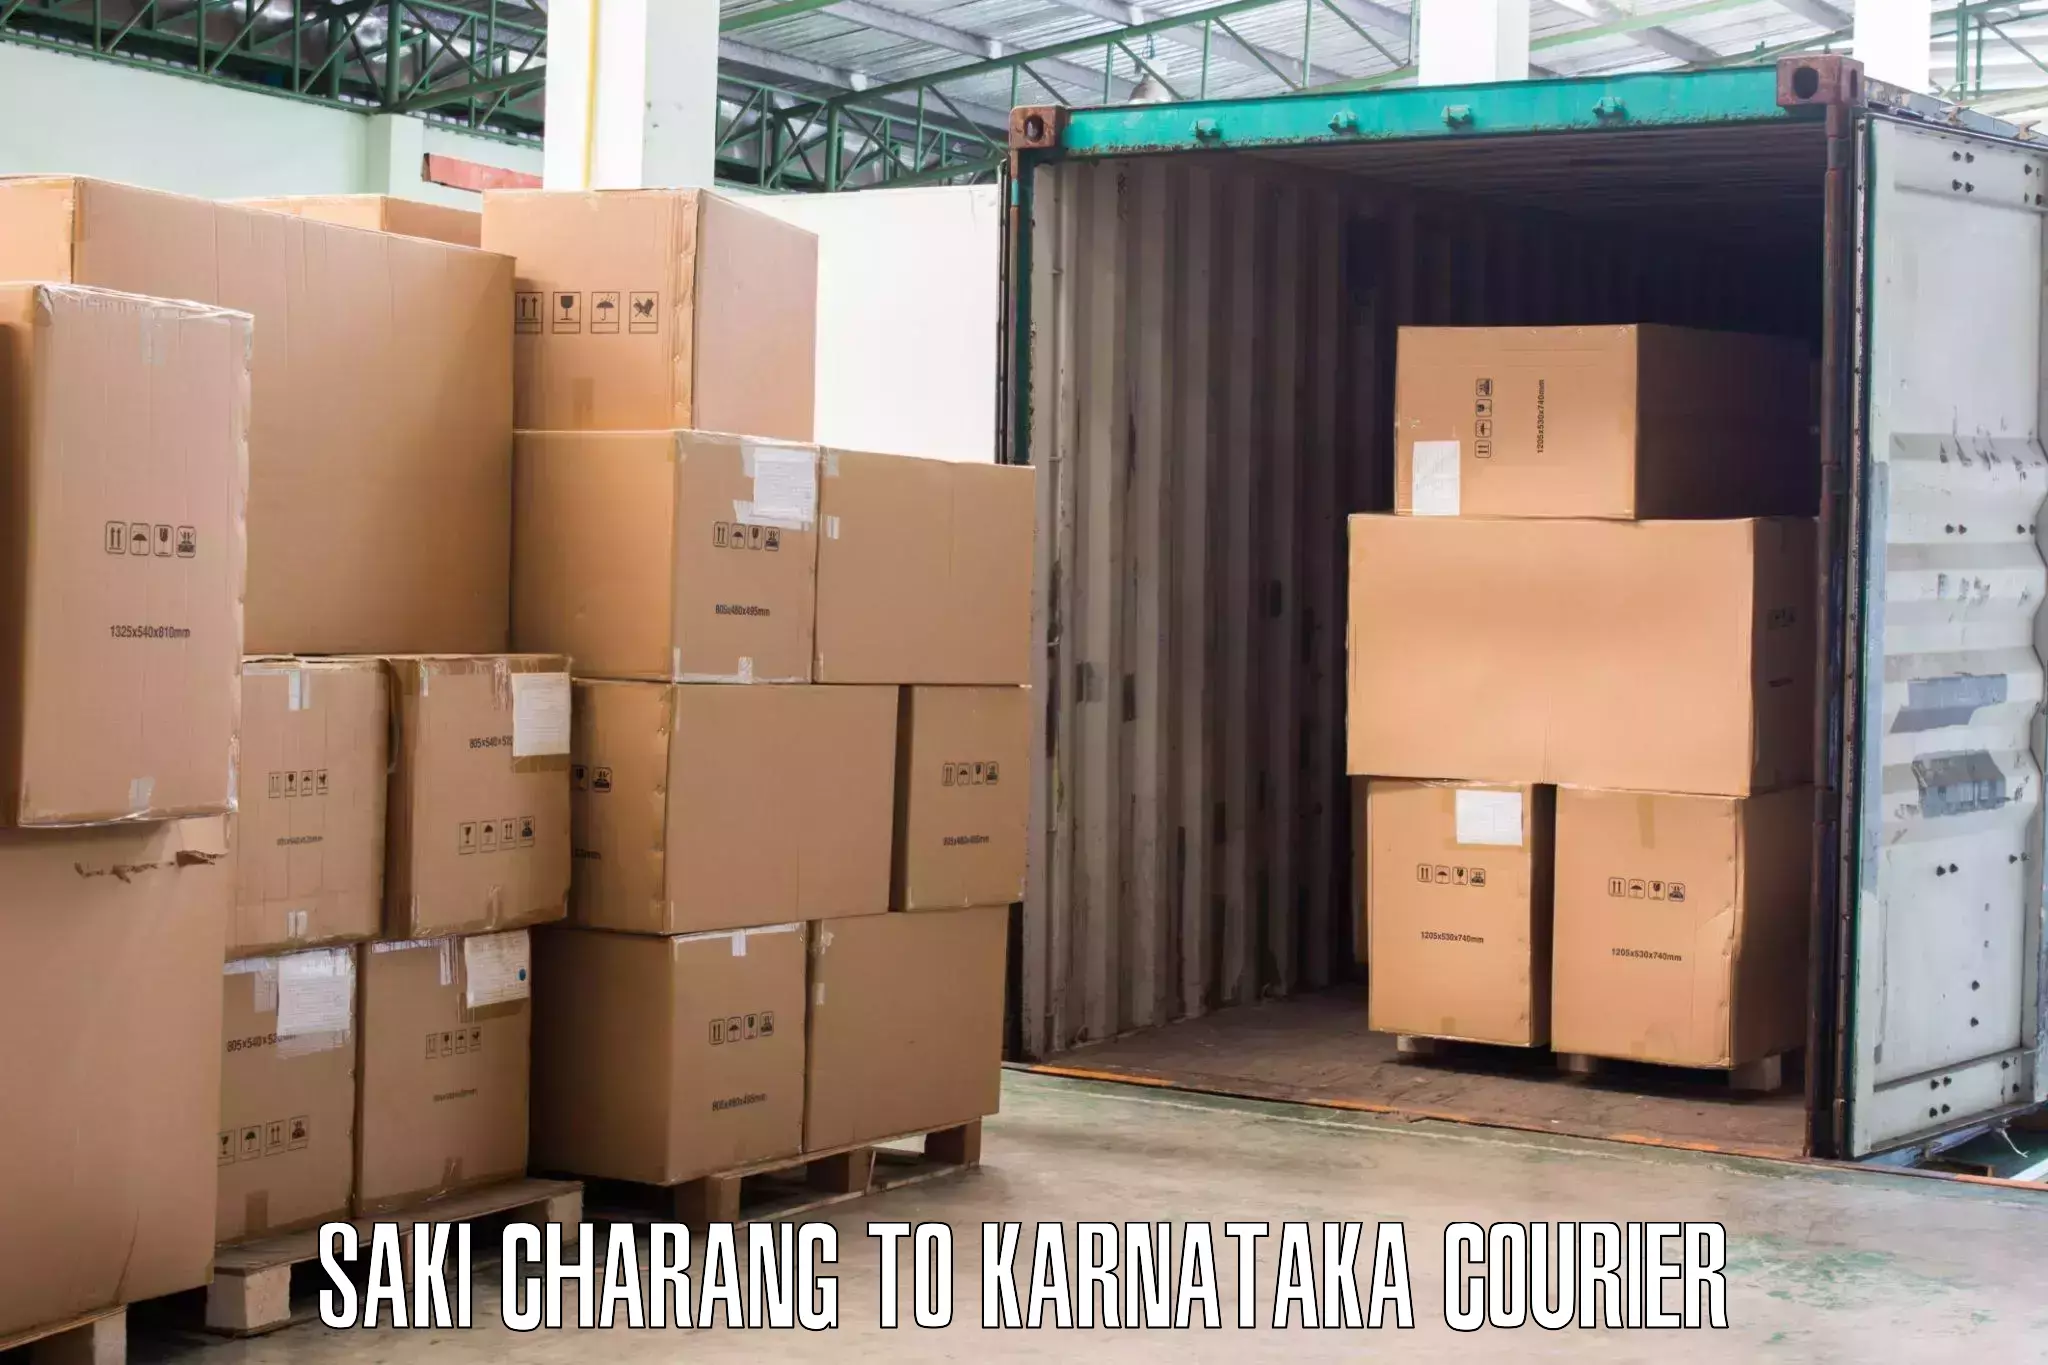 Local furniture movers Saki Charang to Chintamani Kolar